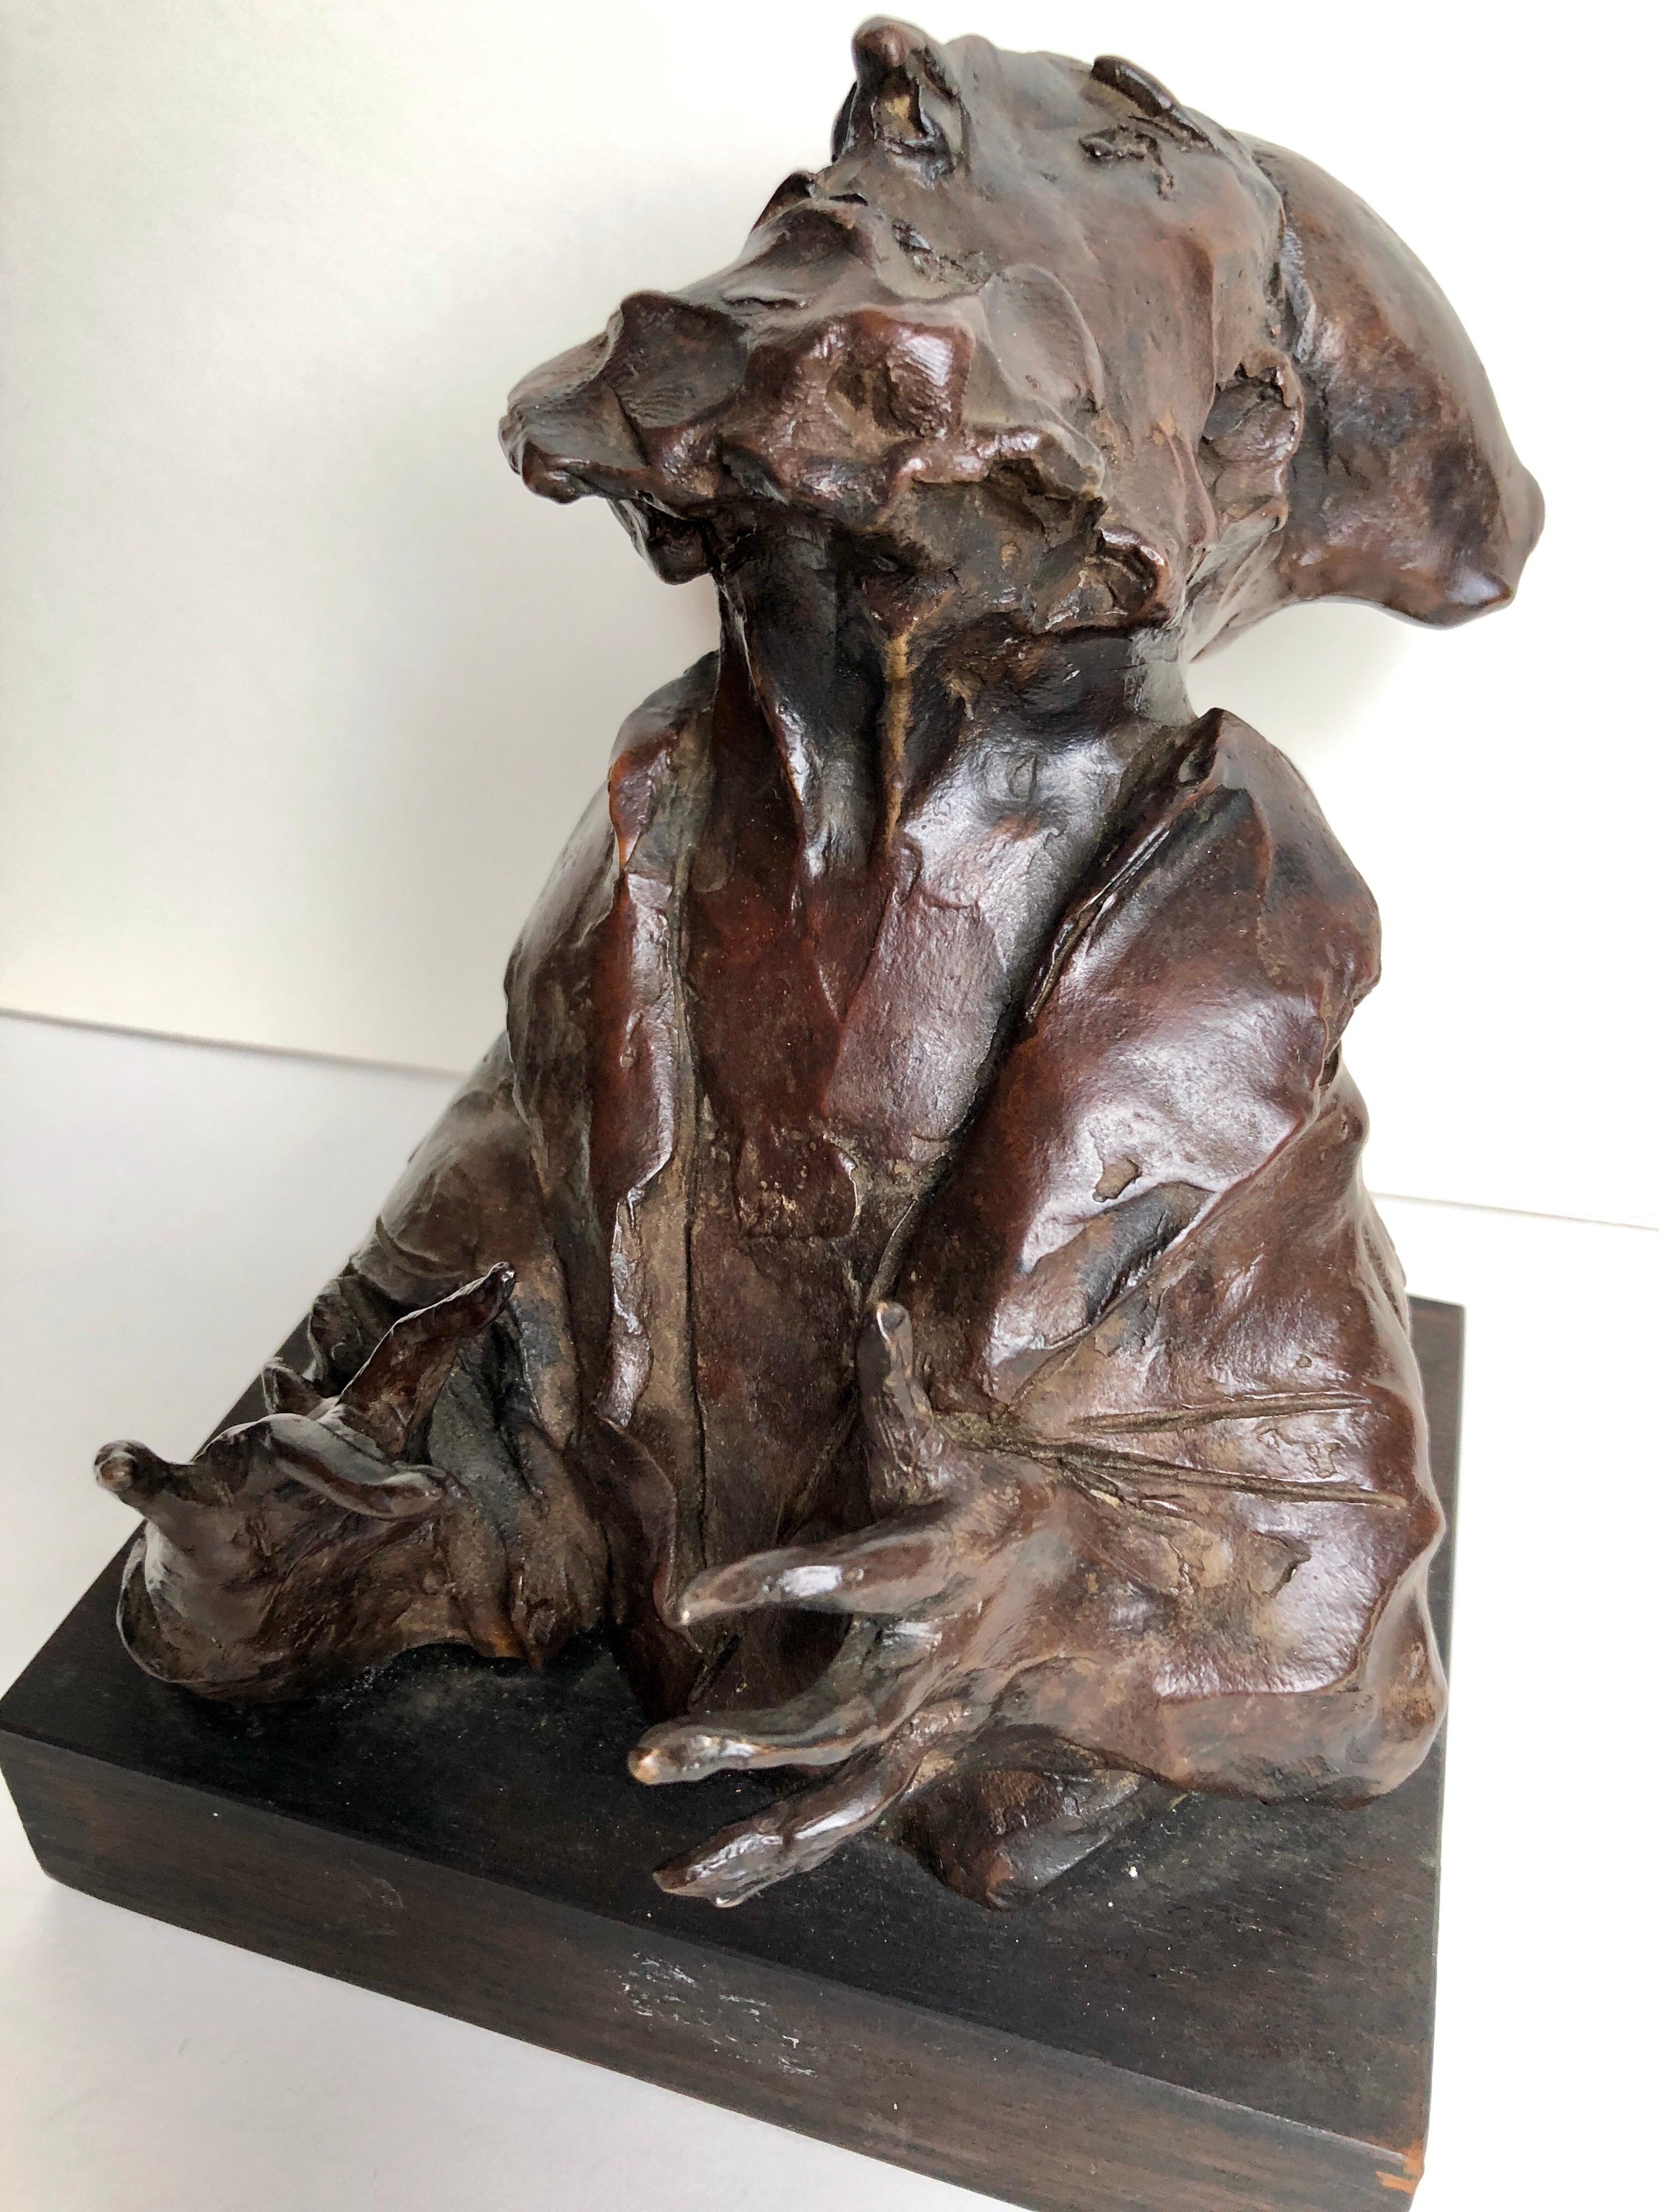 Judaica Bronzeskulptur „Rabbi“ Figur Jewish American Boston Figural Modernist, Judaica – Sculpture von David Aronson